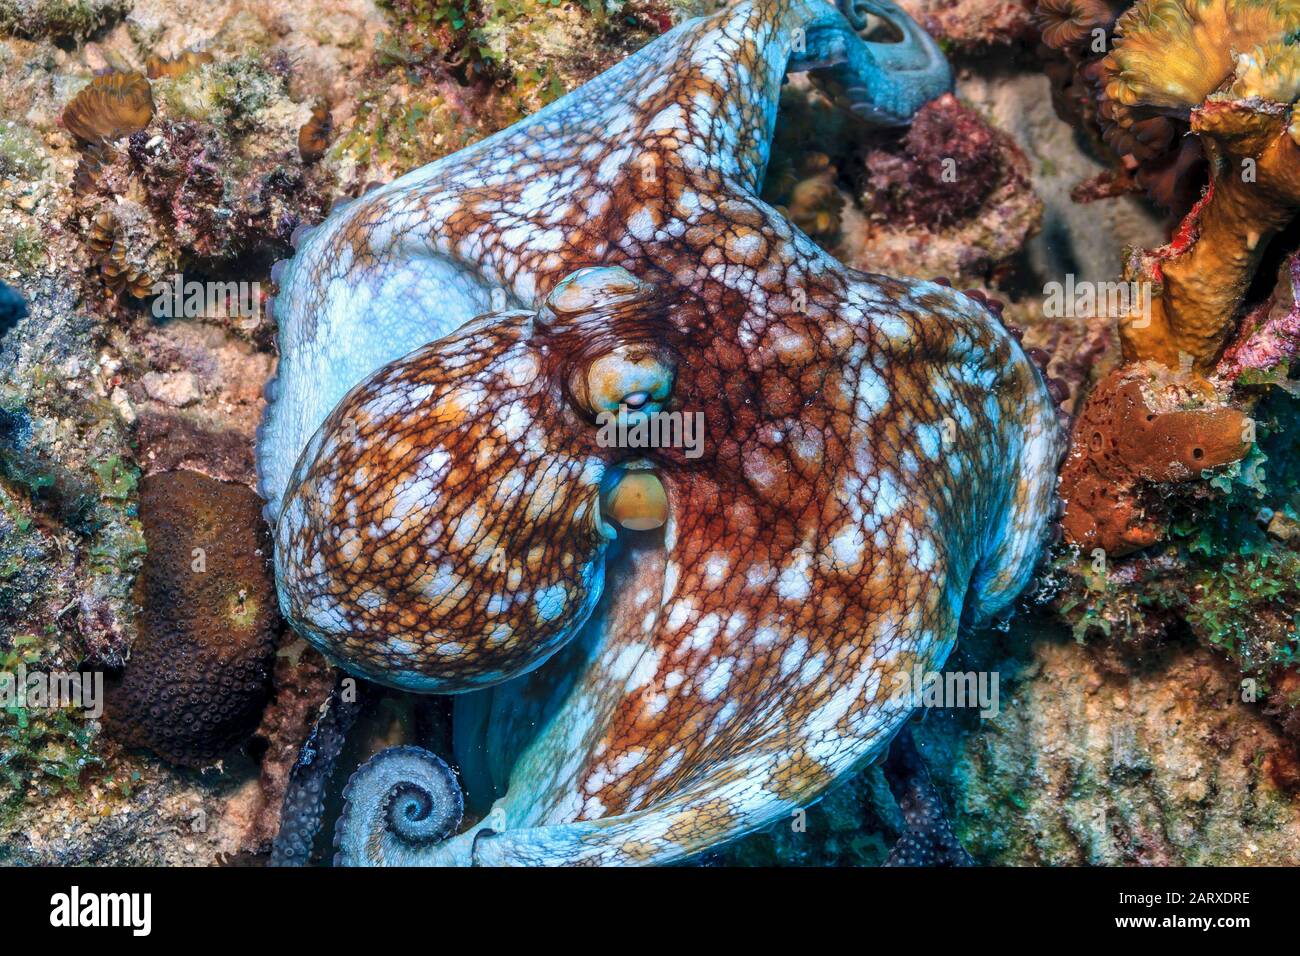 Récif de corail des Caraïbes,poulpe commune,Octopus vulgaris,est un mollusque appartenant à la classe Céphalopoda. Banque D'Images